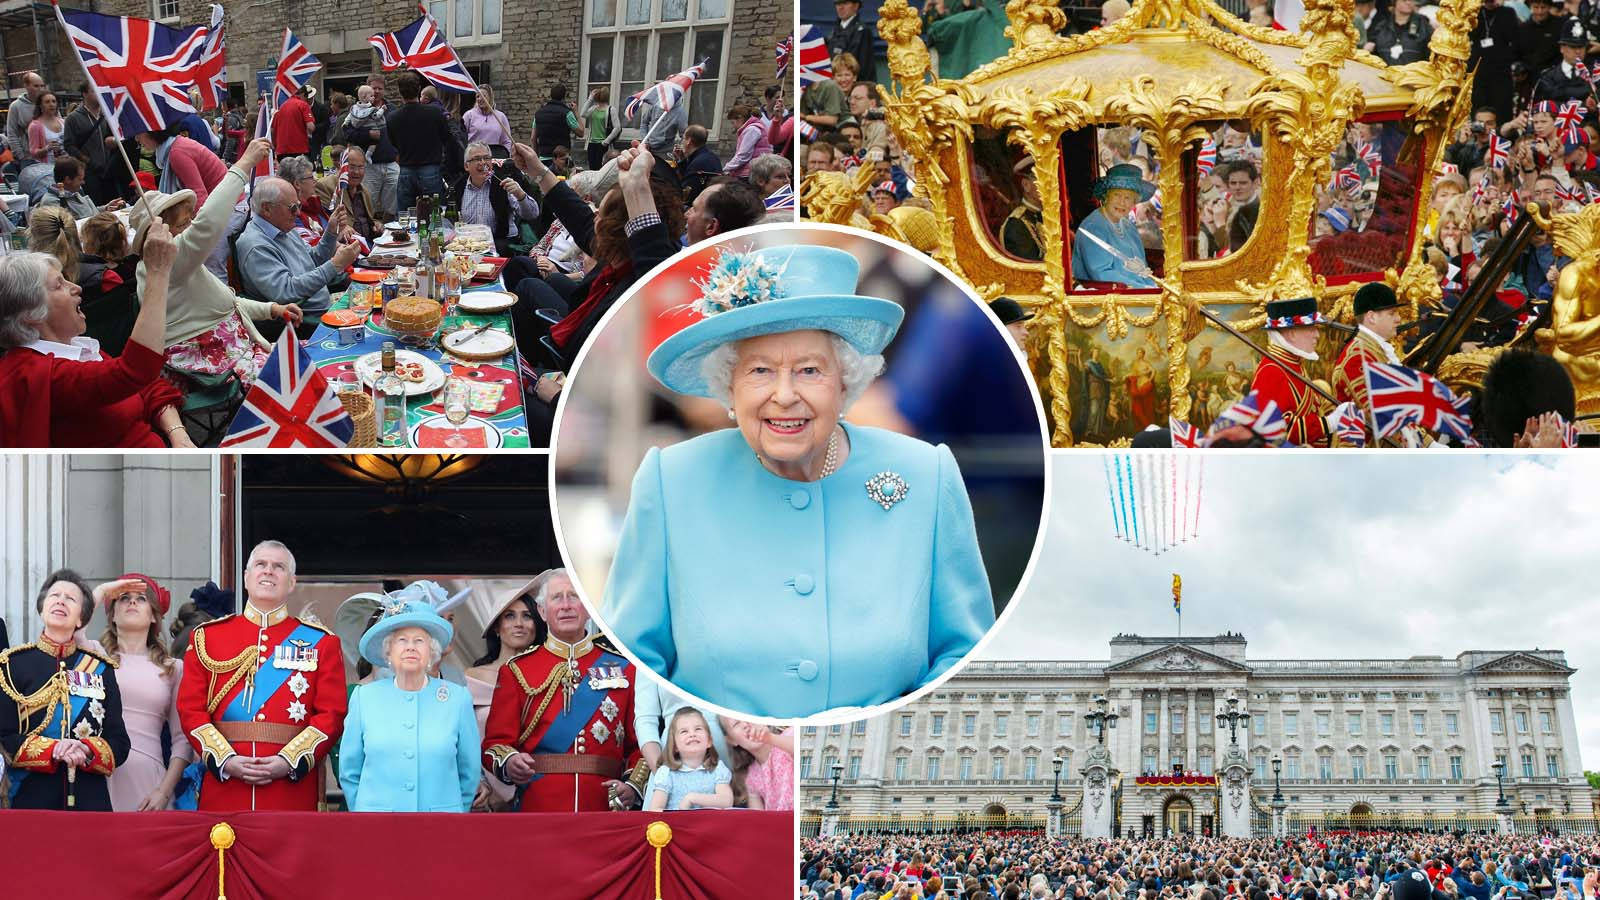 Queen Platinum Jubilee 2022 Bannière d'extérieur Décoration de fête Poster Union Jack Angleterre Royal Family Queen Elizabeth Jubilee Celebration Anniversary 